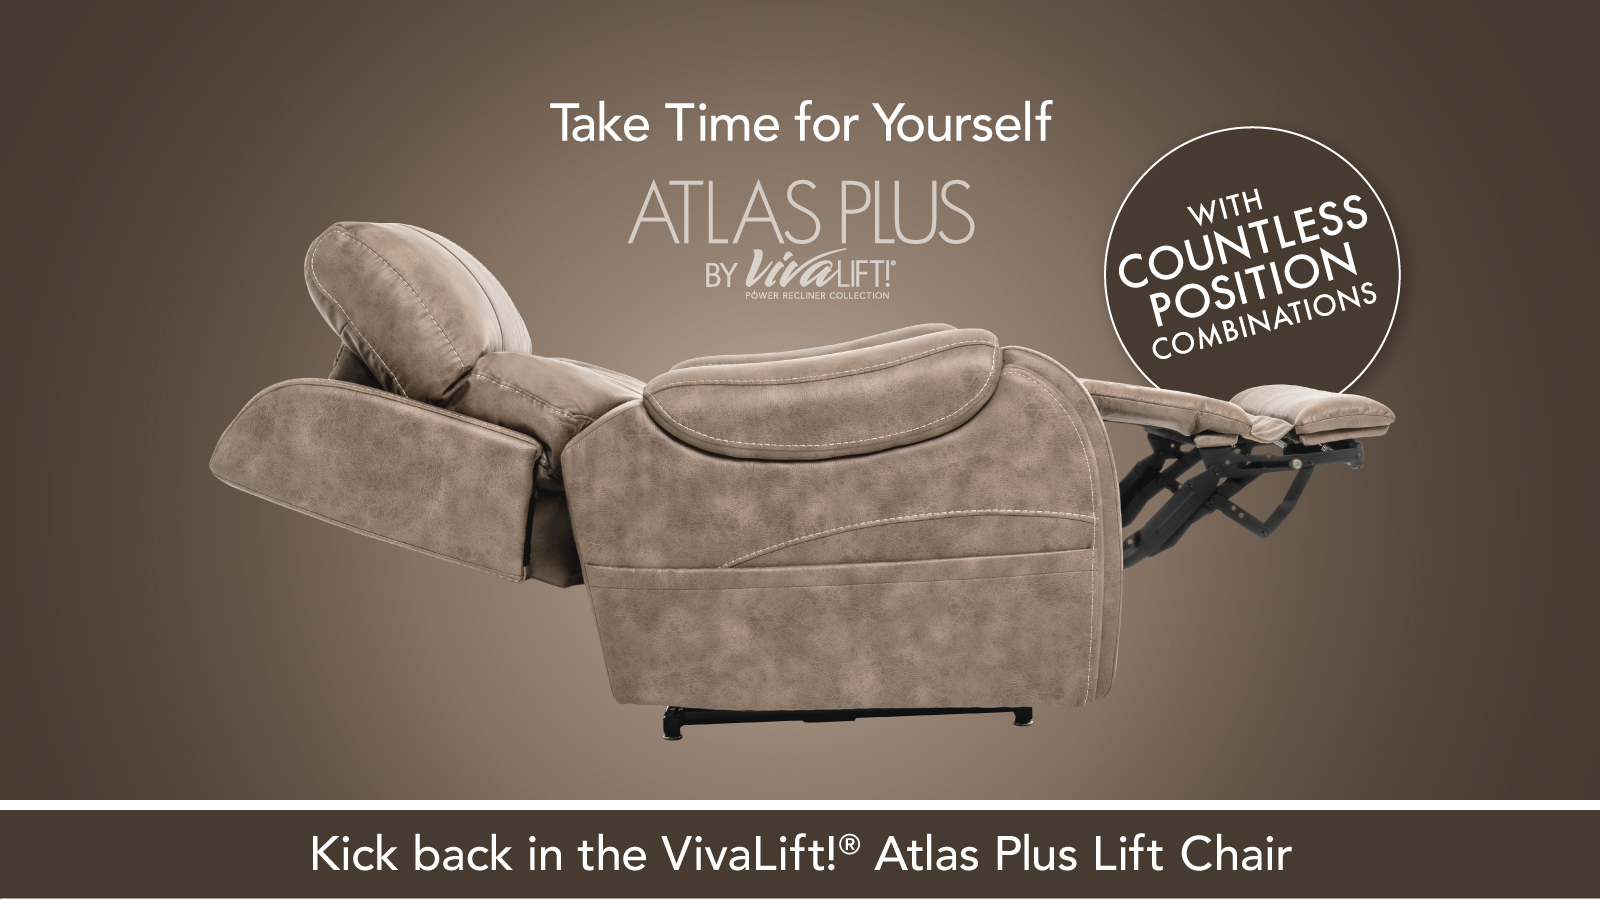 VivaLift! Atlas Plus